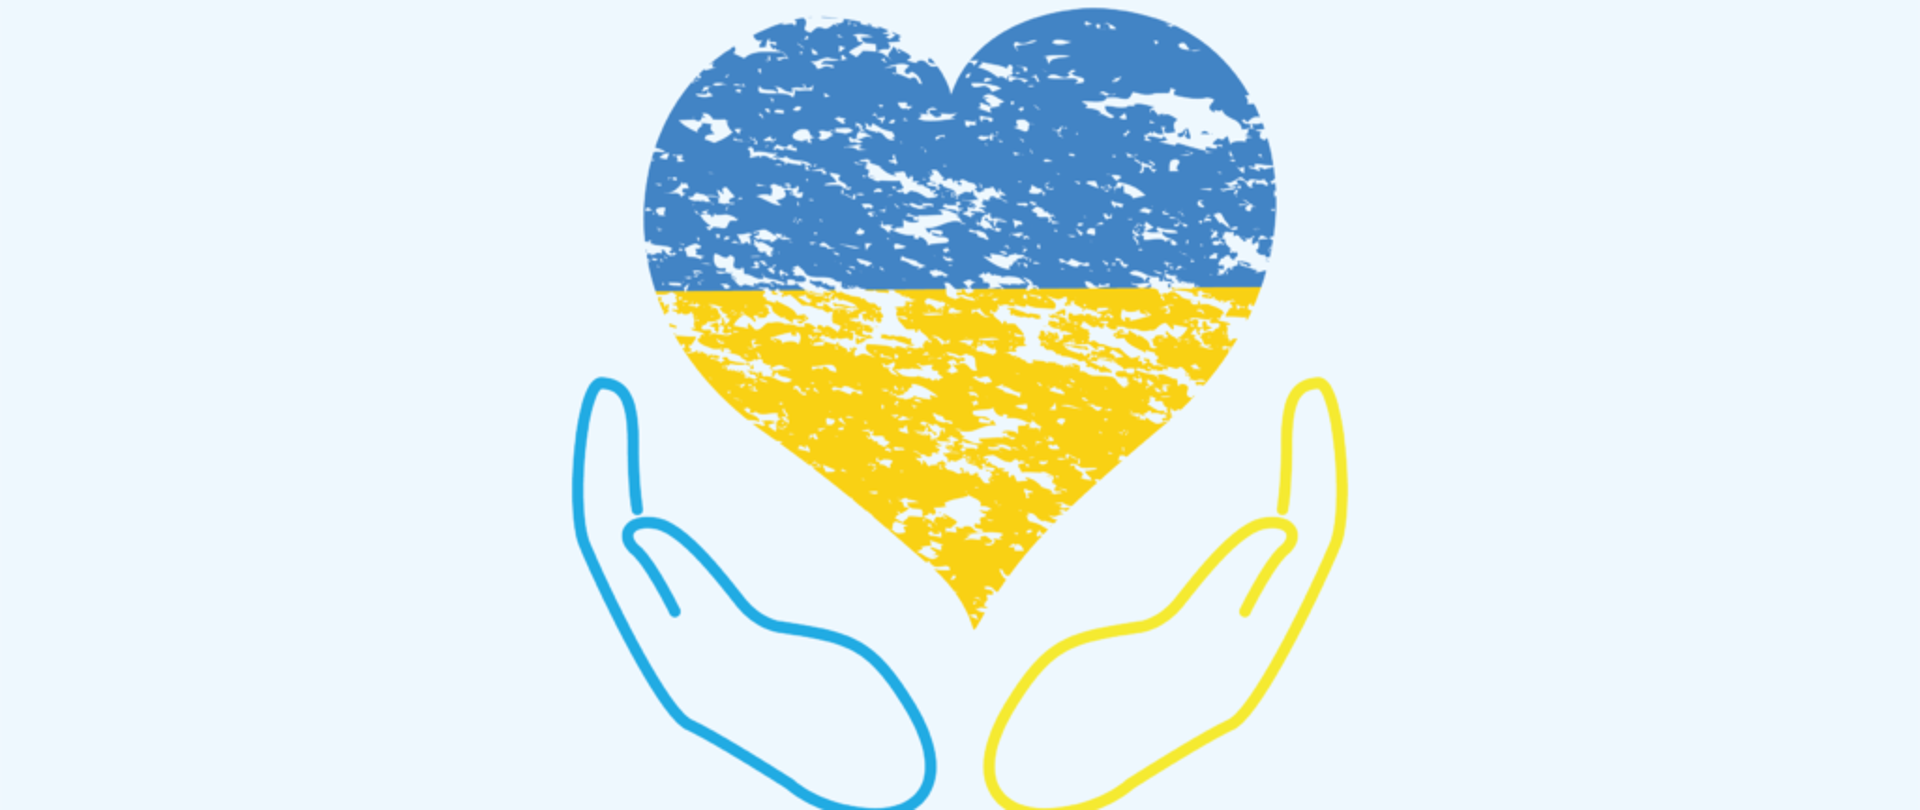 Zdjęcie przedstawia serce w kolorze żółto - niebieskim.